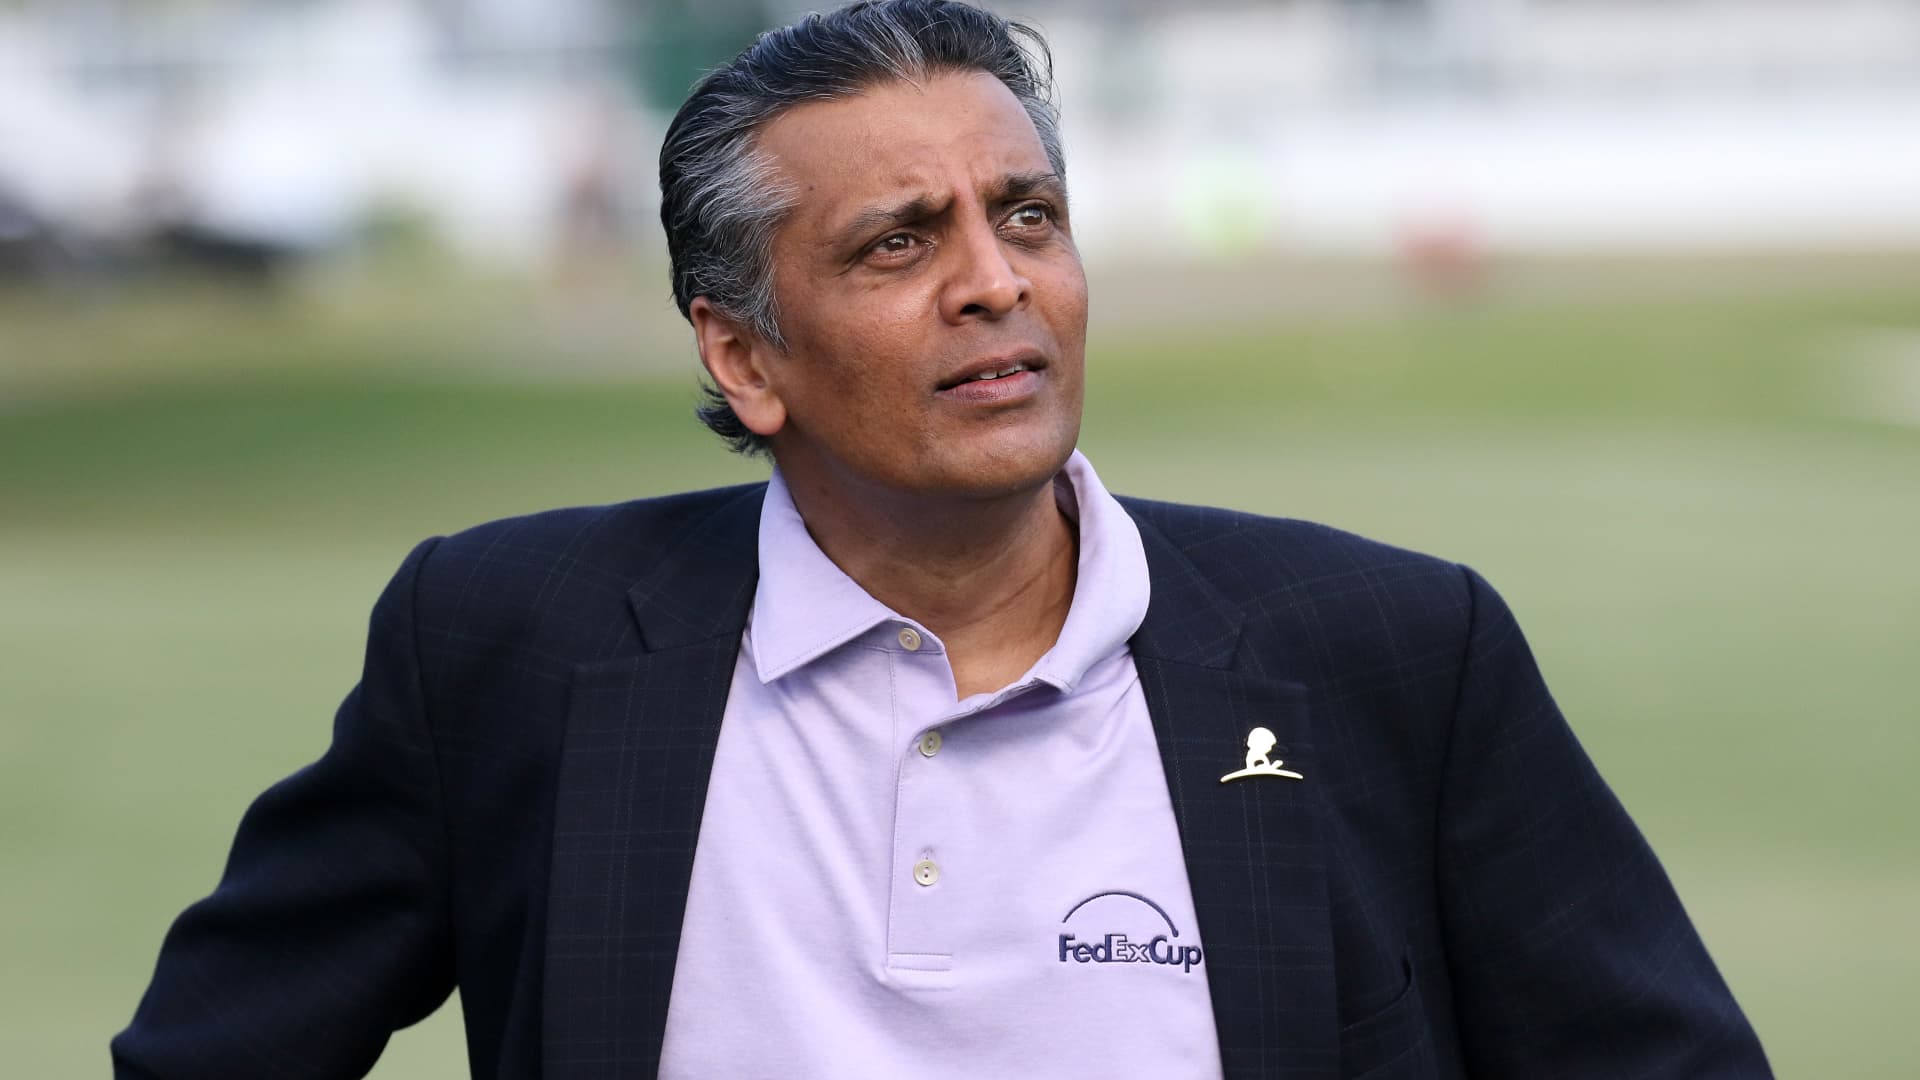 FedEx names Raj Subramaniam as CEO, replacing founder Fred Smith - CNBC